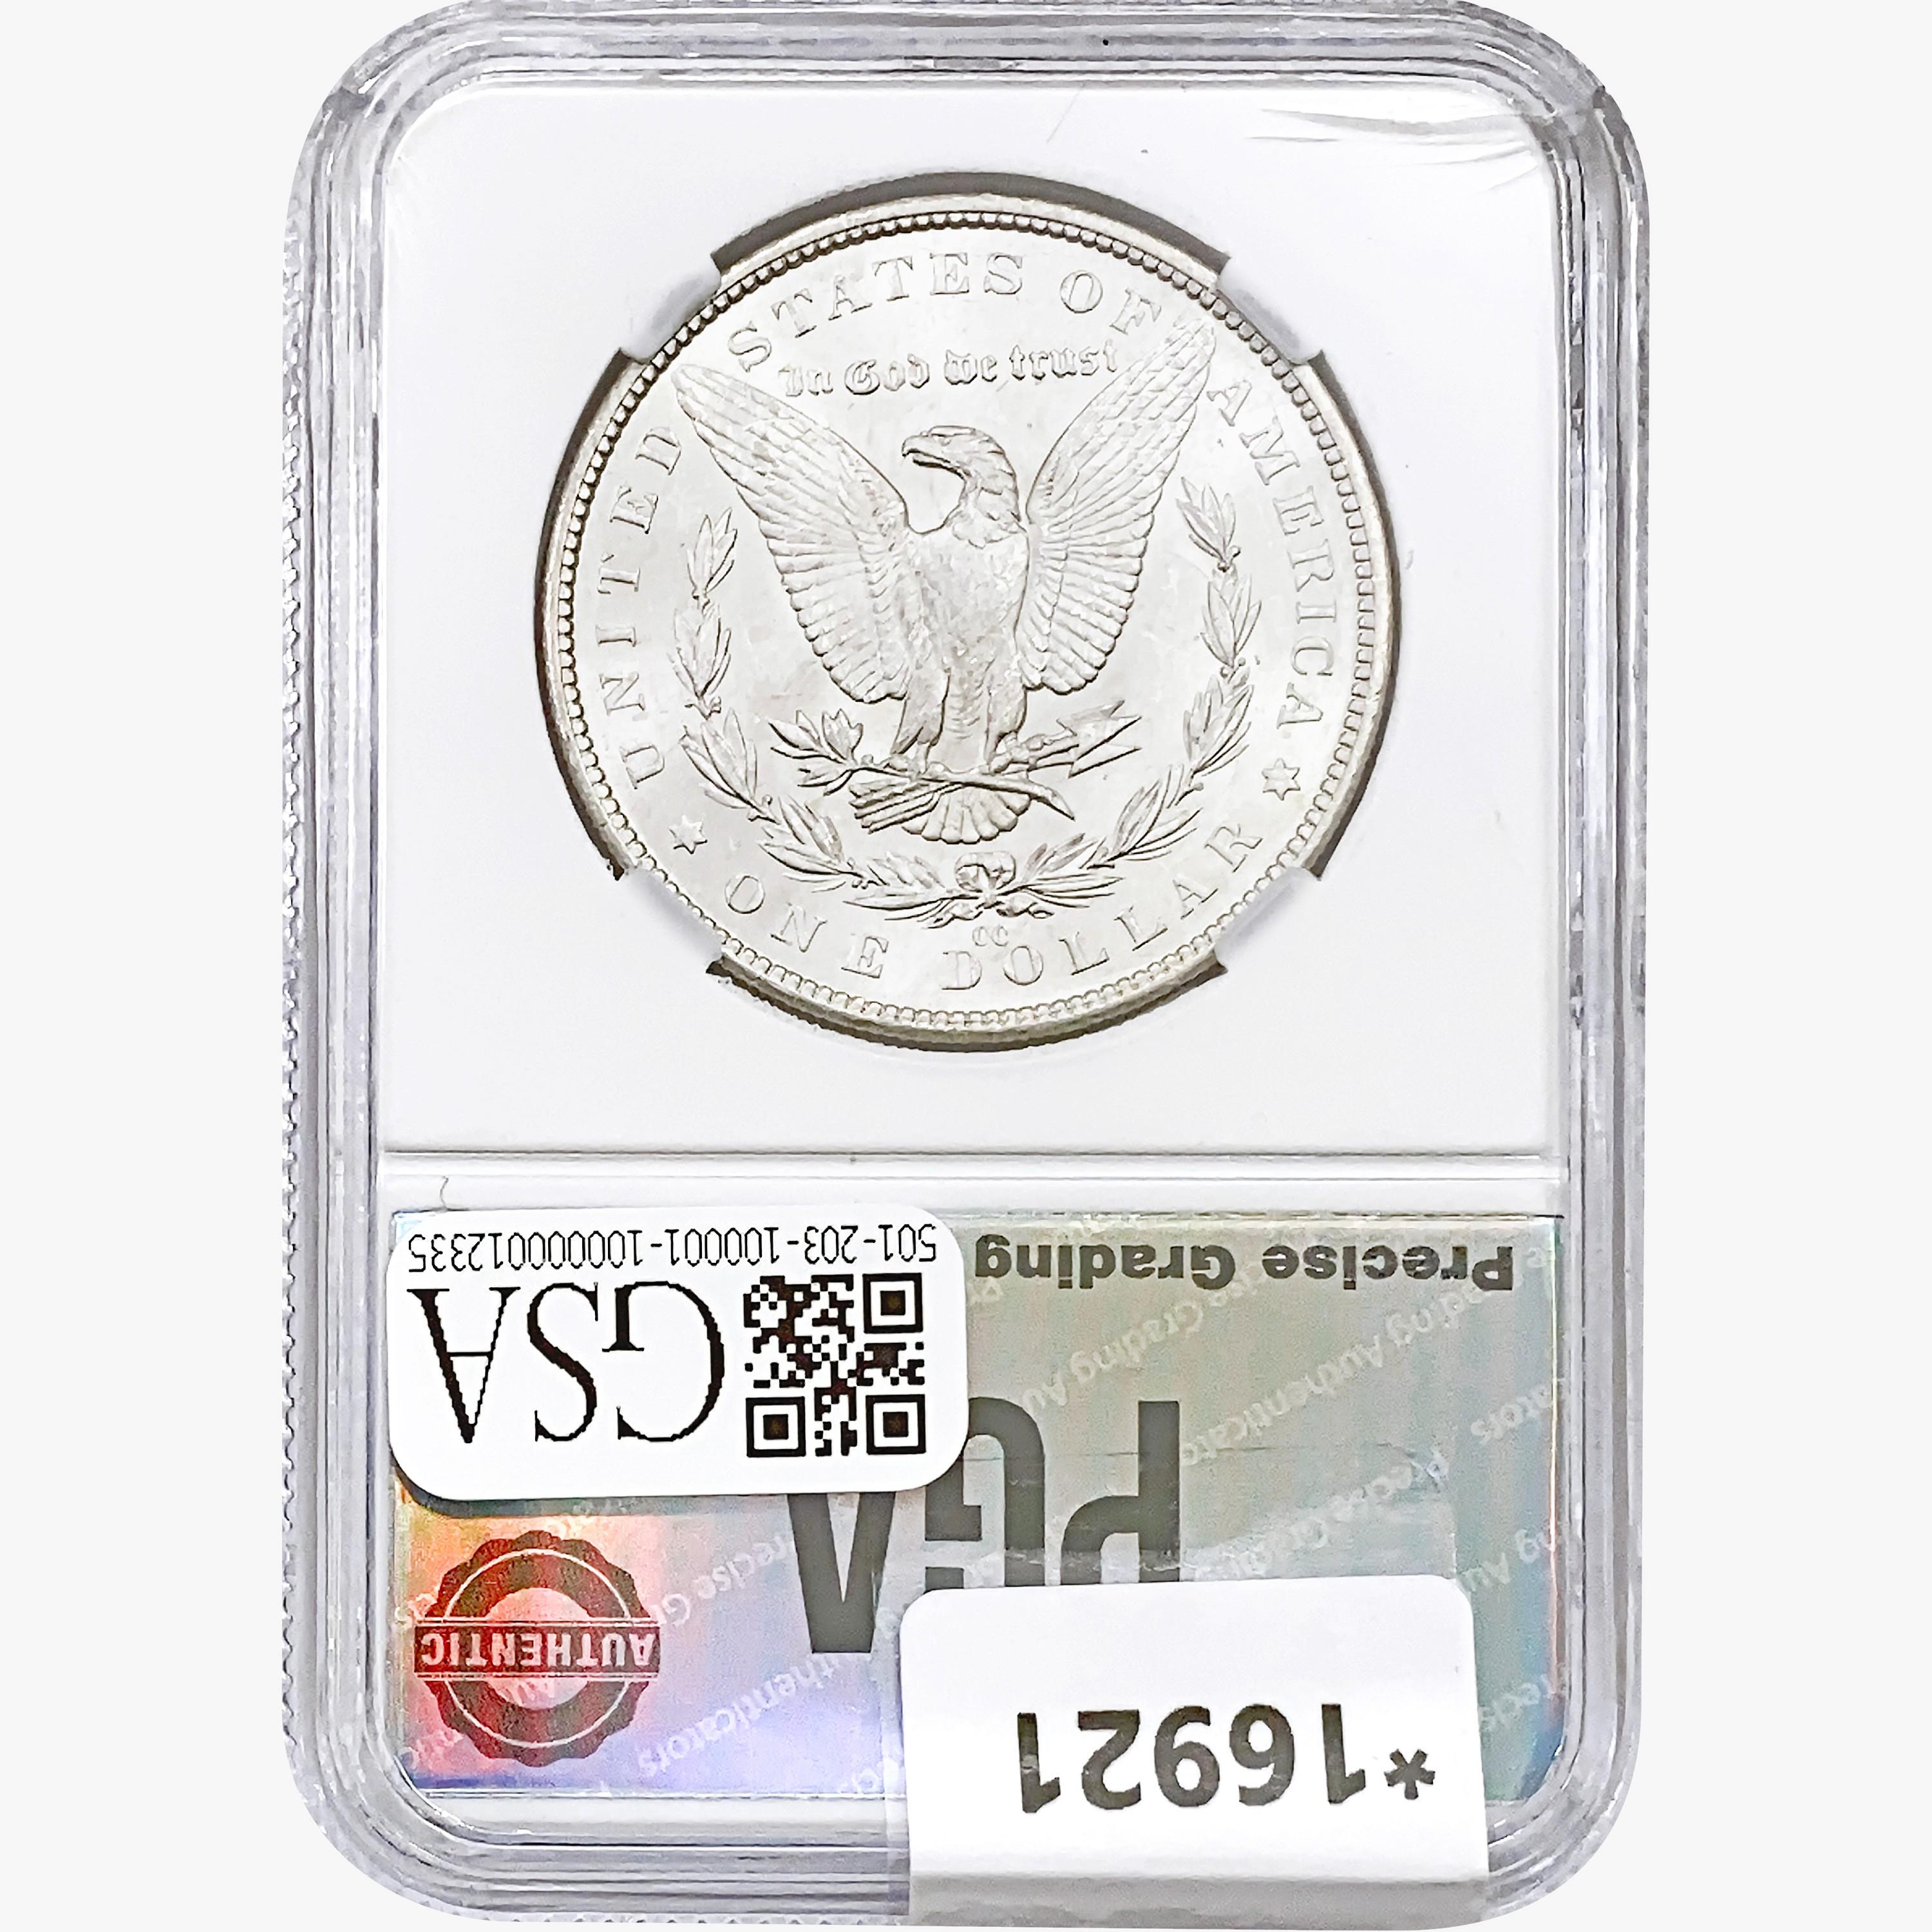 1882-CC Morgan Silver Dollar PGA MS67